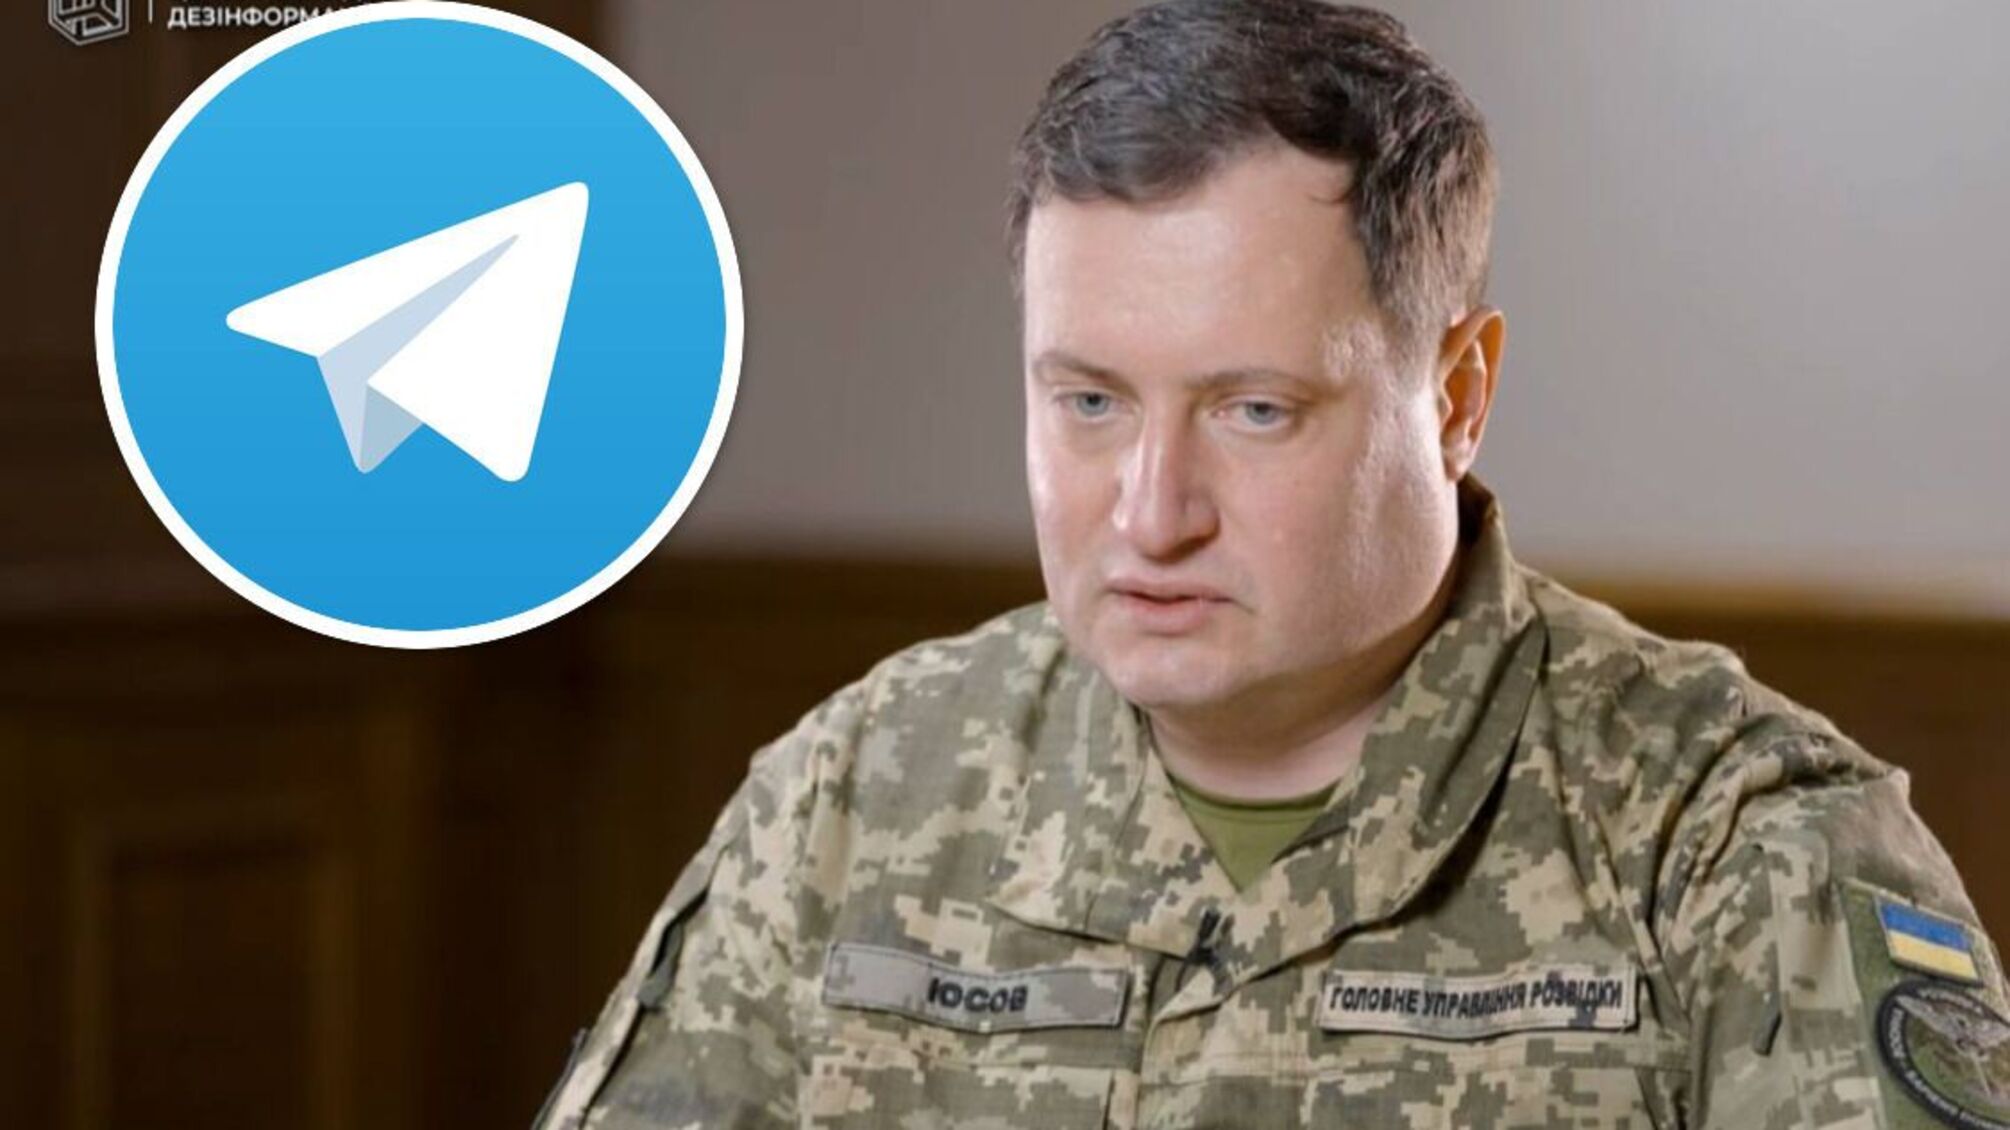 Зафіксовані випадки співпраці зі спецслужбами рф, – ГУР про заборону Telegram в Україні